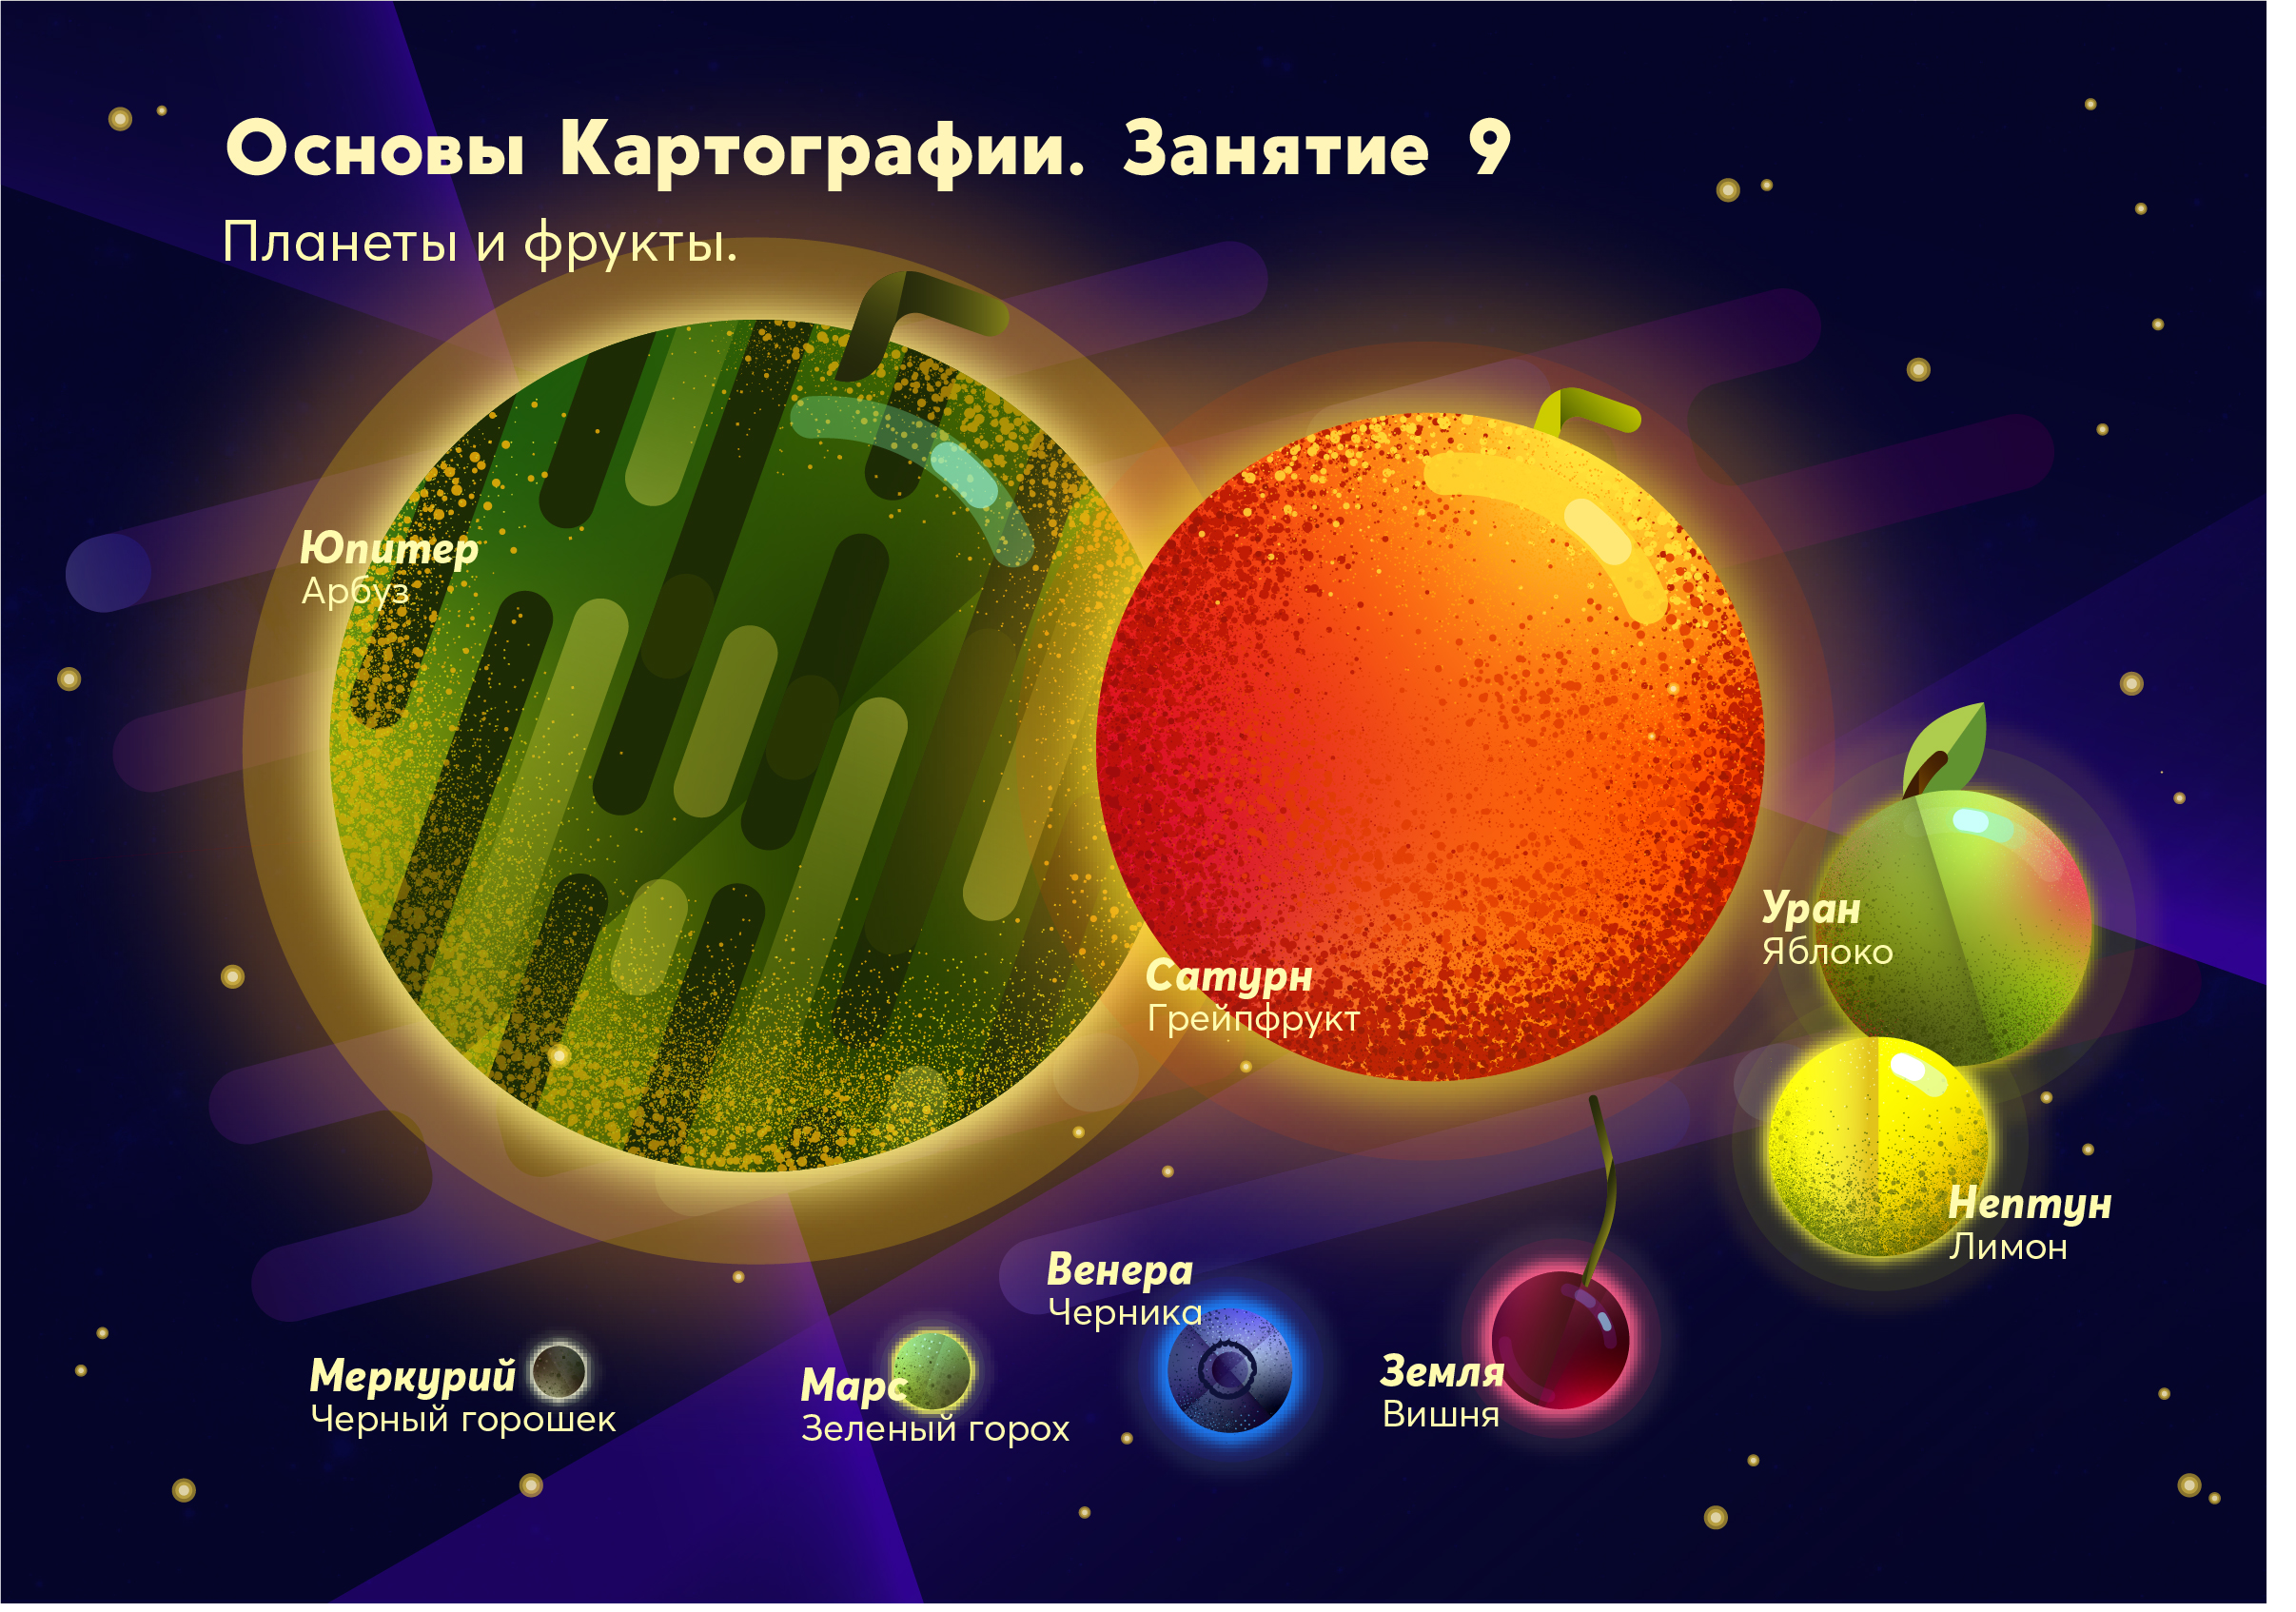 Земля планета солнечной системы вопросы. Планеты солнечной системы фрукты. Размеры планет и солнца фрукты. Размеры планет на примере фруктов. Солнечная система фруктами.